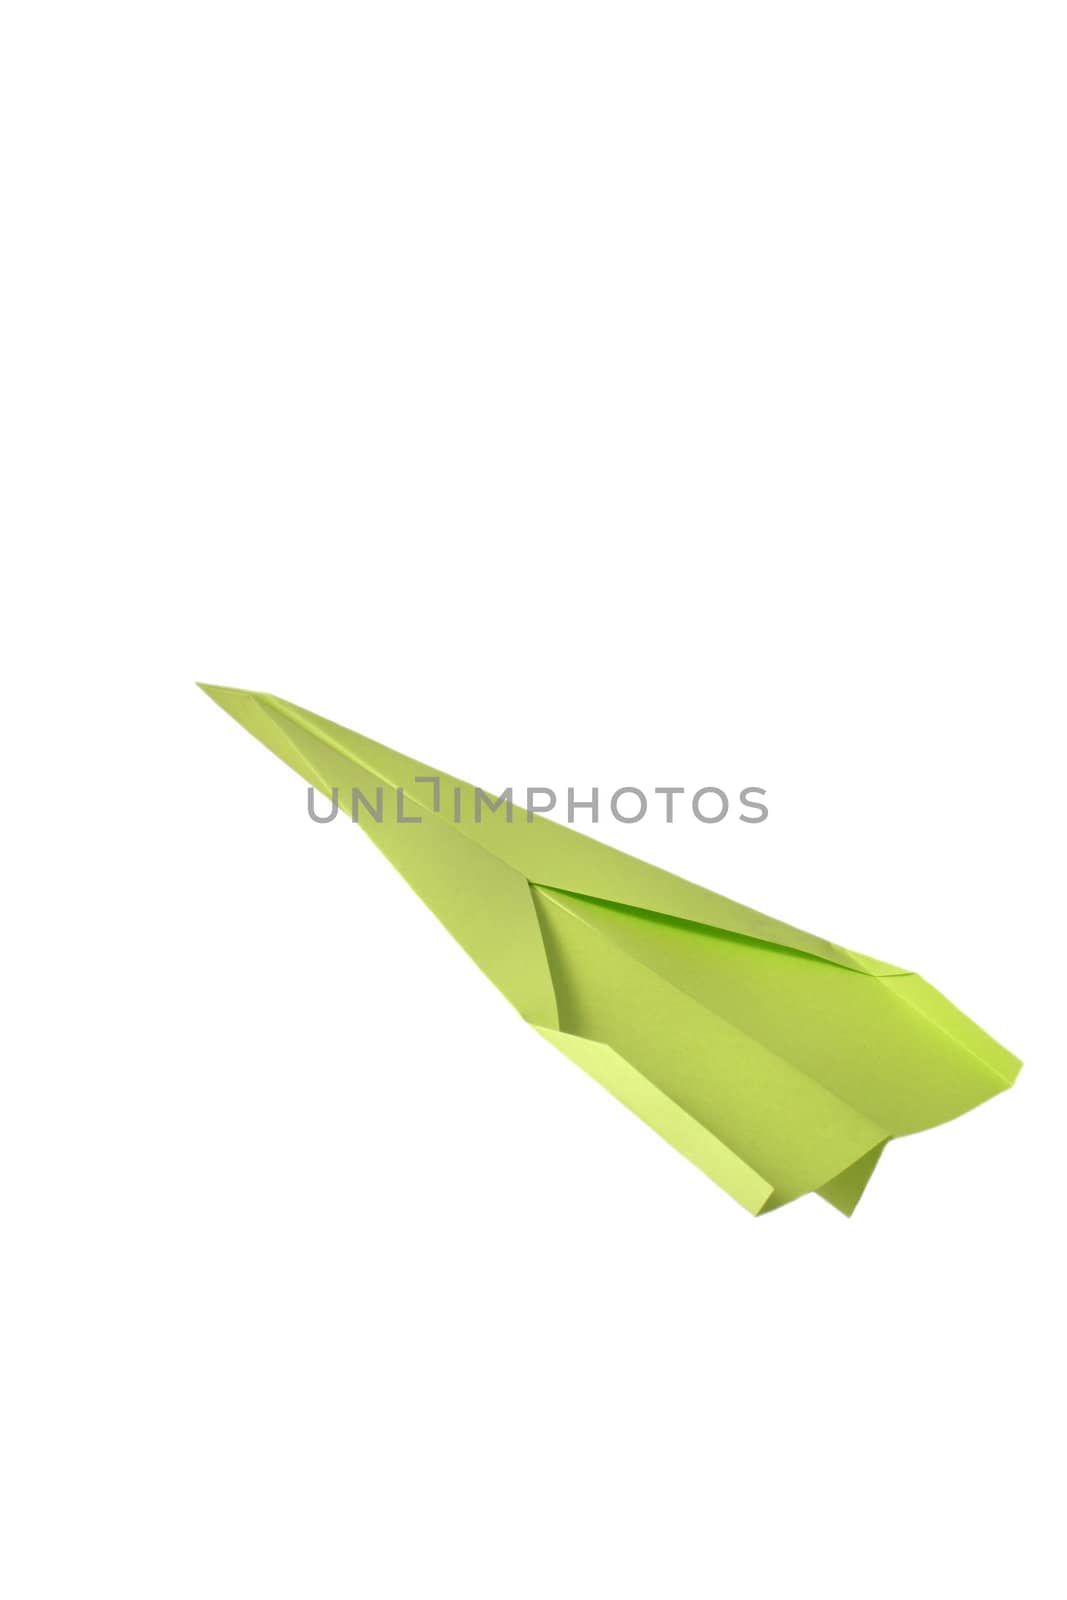 Paper aeroplane, isolated on white background.